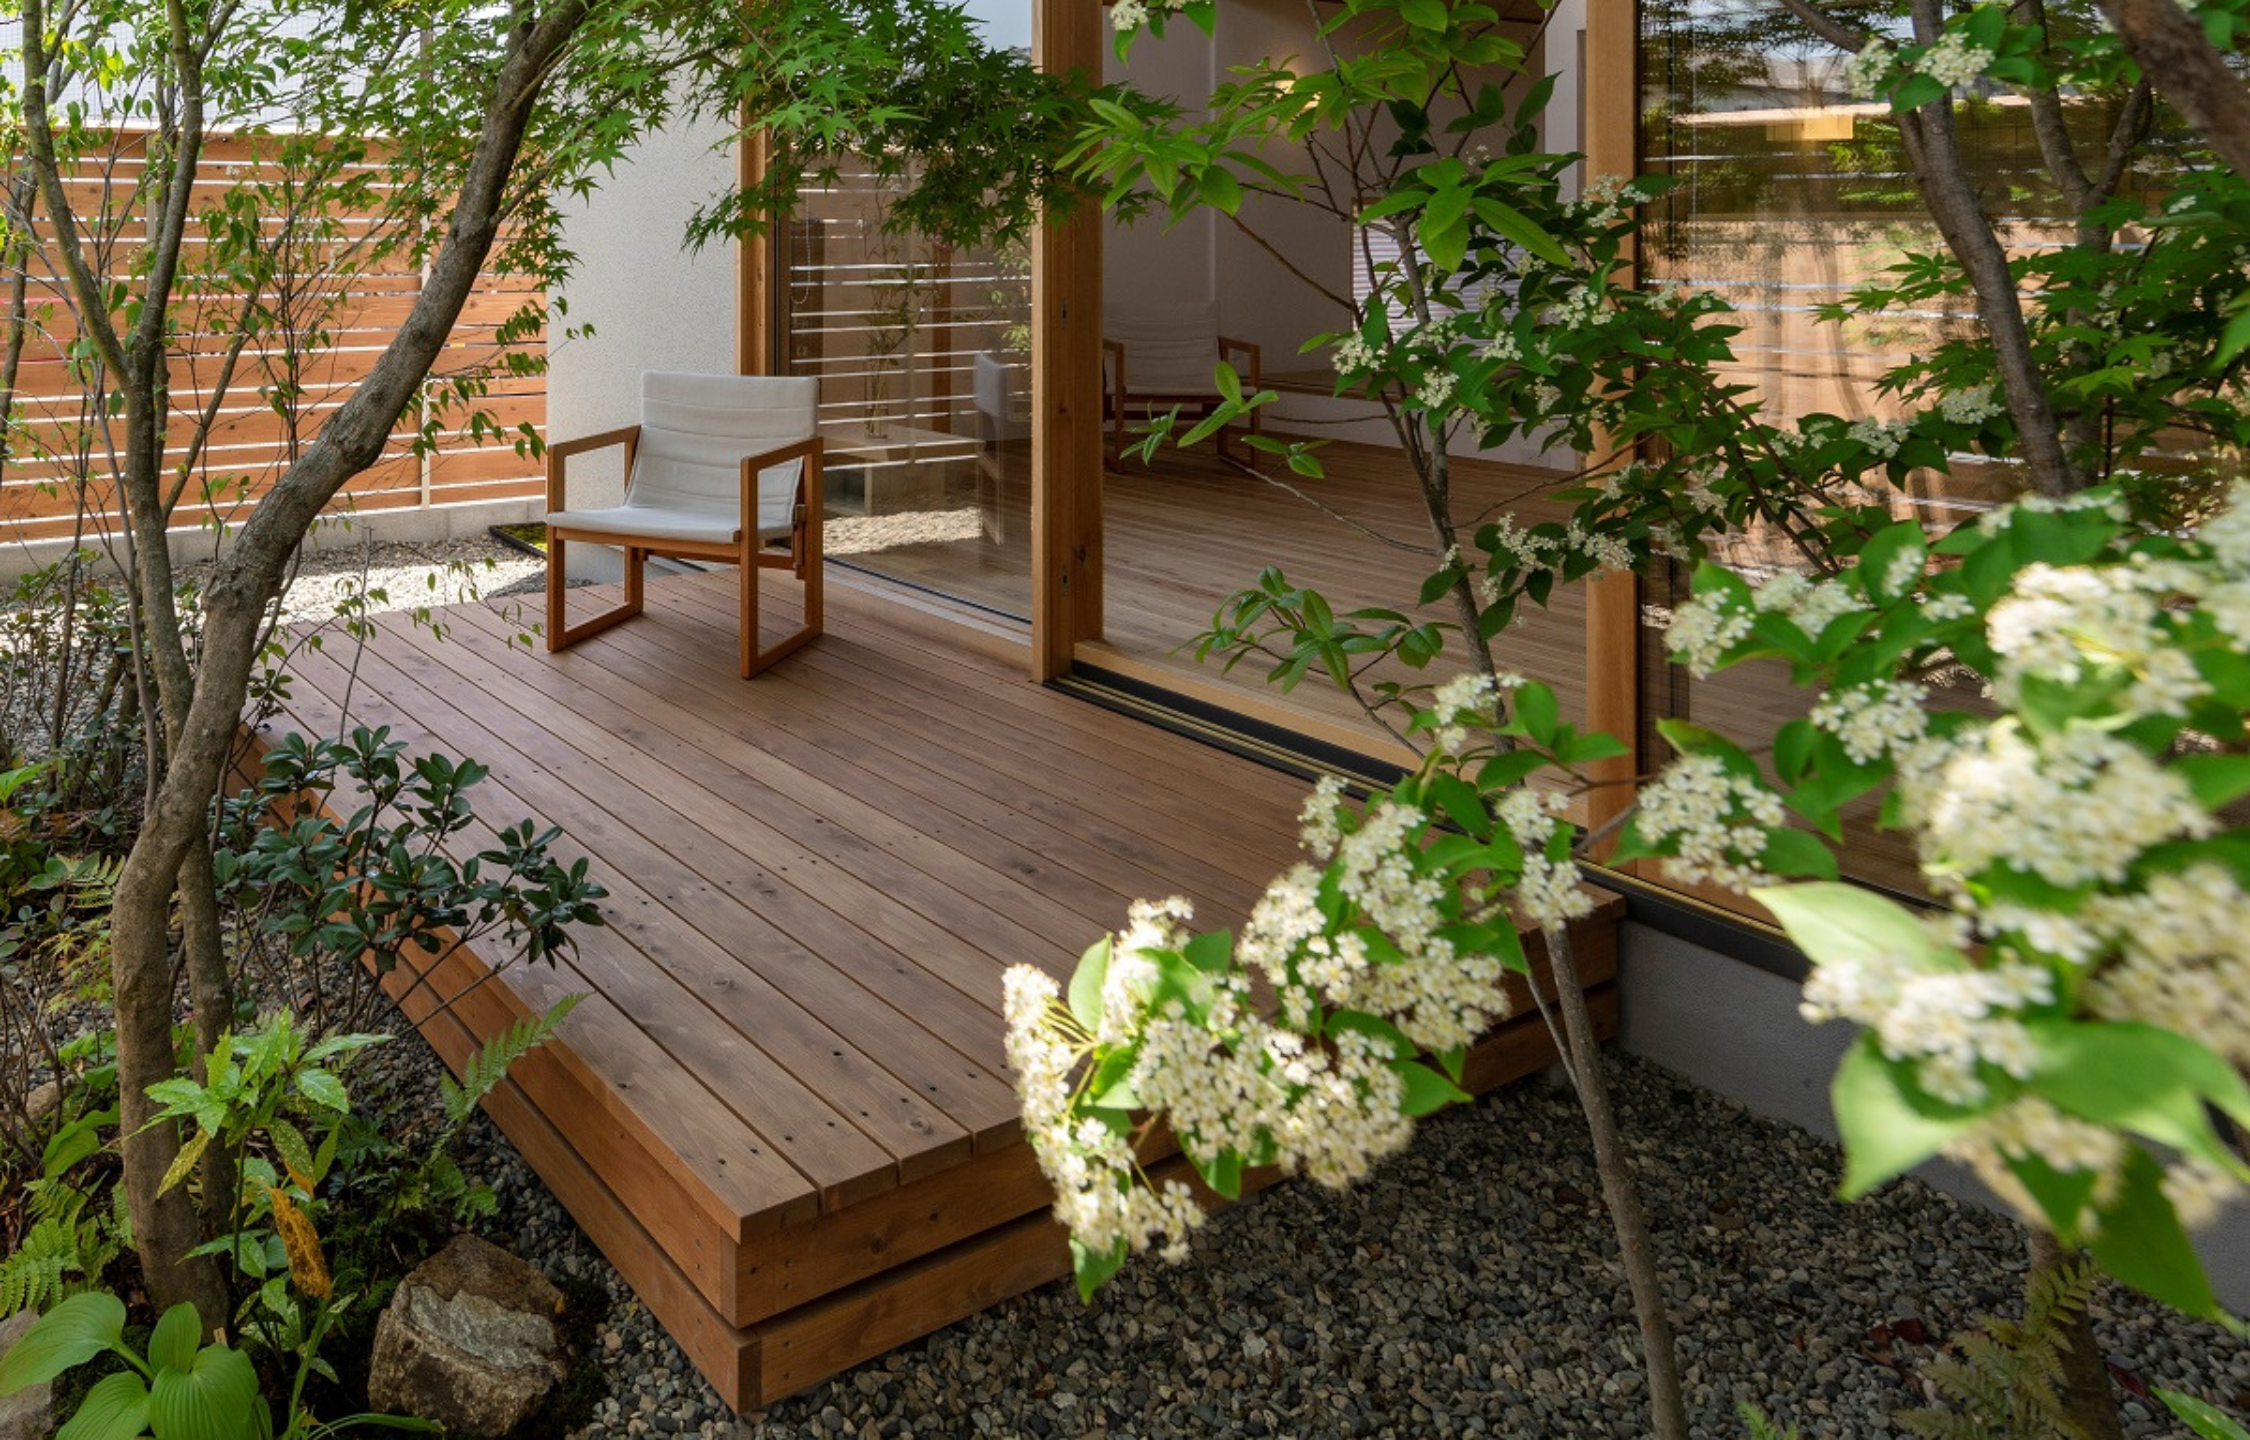 Thiết kế nhà gỗ kết hợp sân vườn đẹp không thể bỏ qua tại Bình Phước